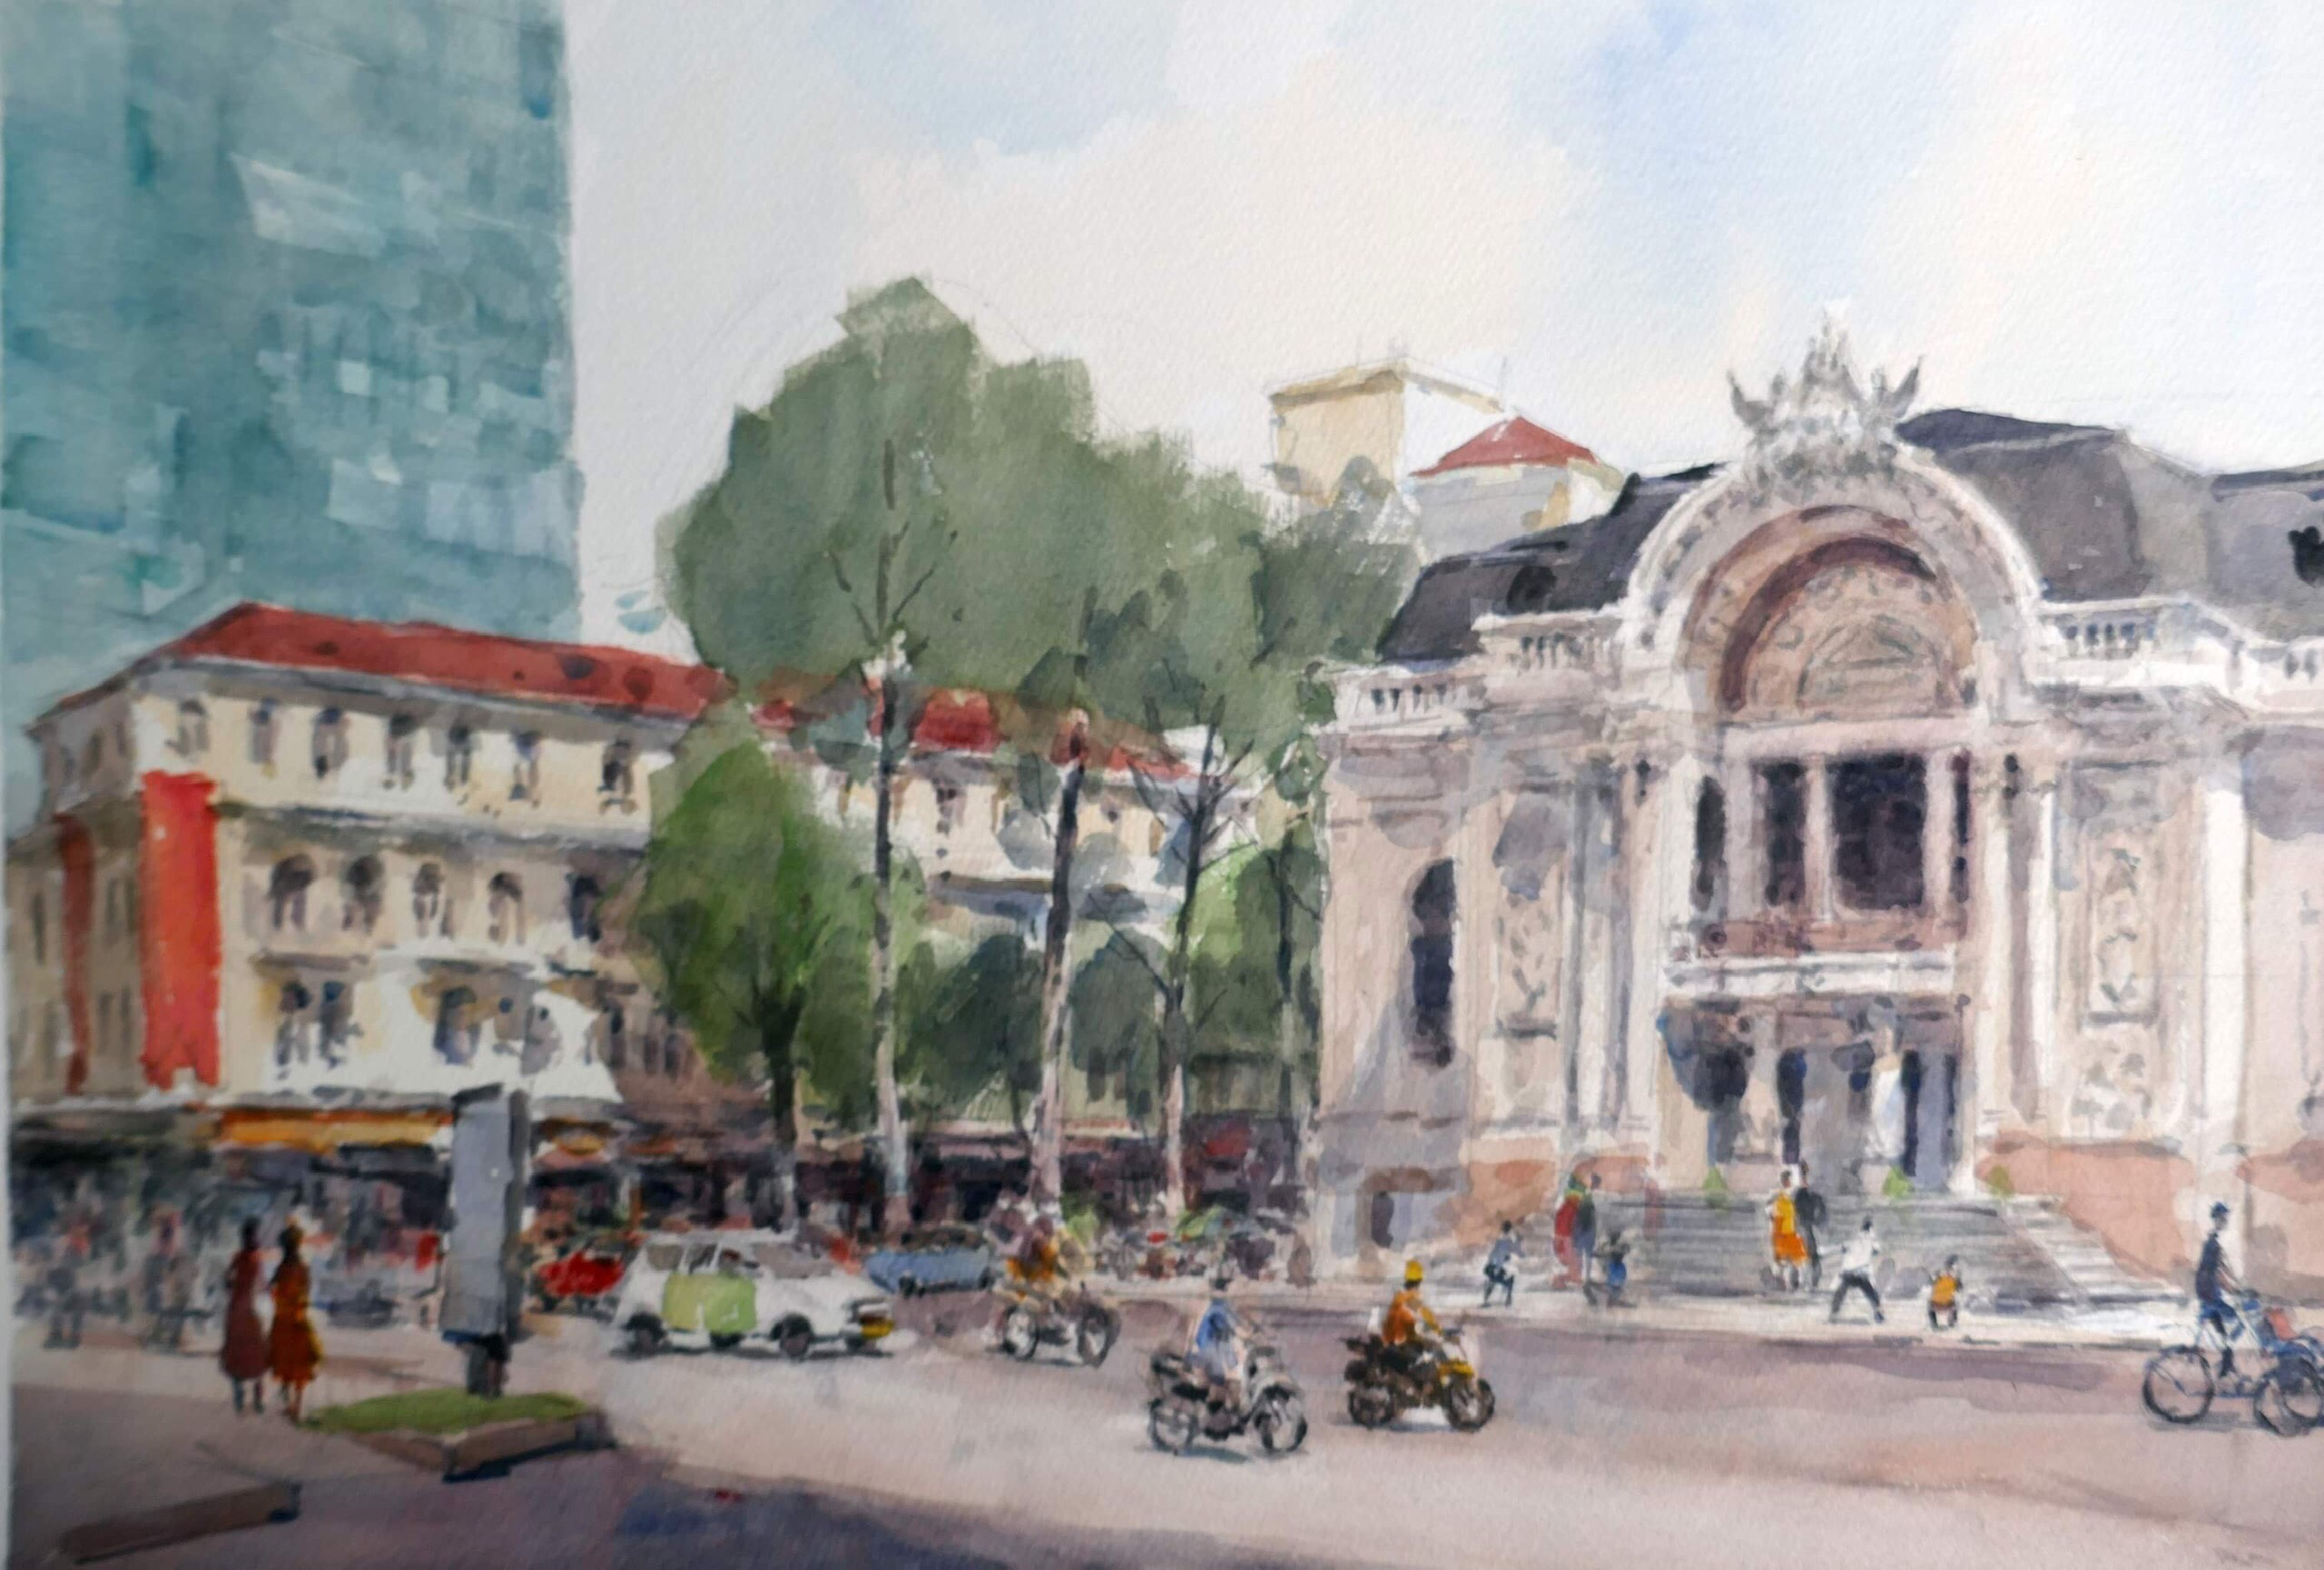 A sketch of the Saigon Opera House.